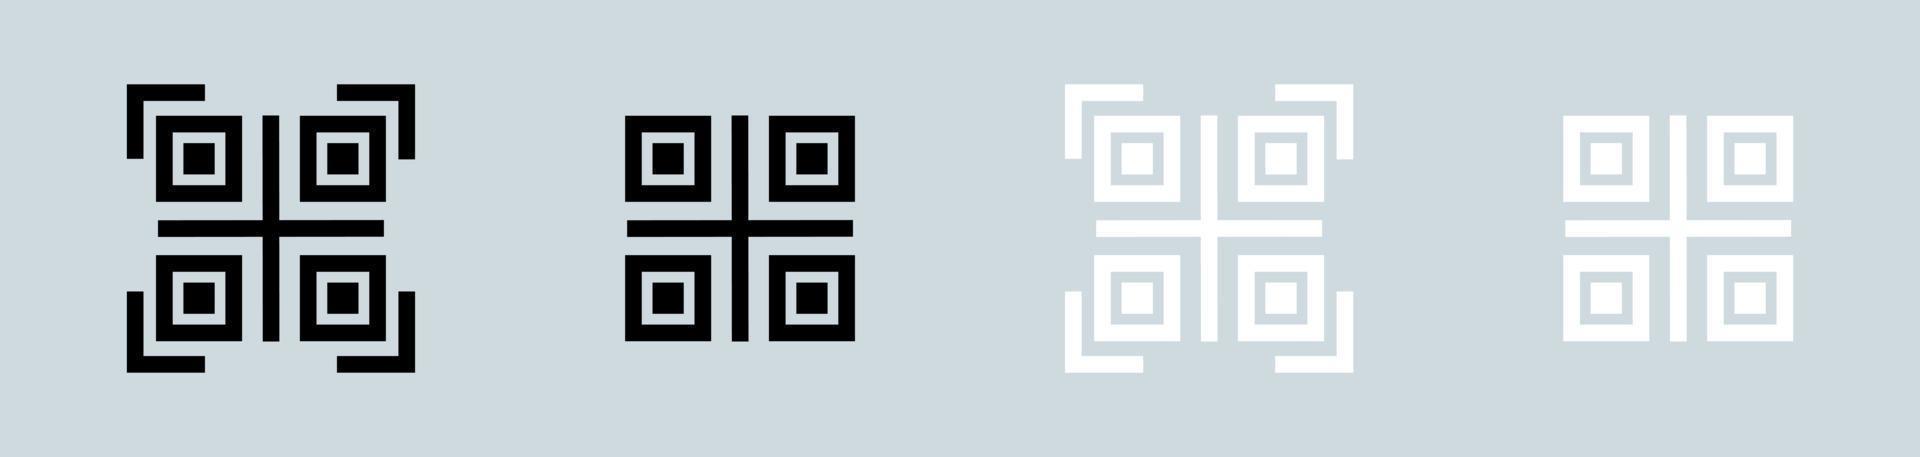 icono de vector de código qr. escaneando la colección de símbolos de código qr en colores blanco y negro.